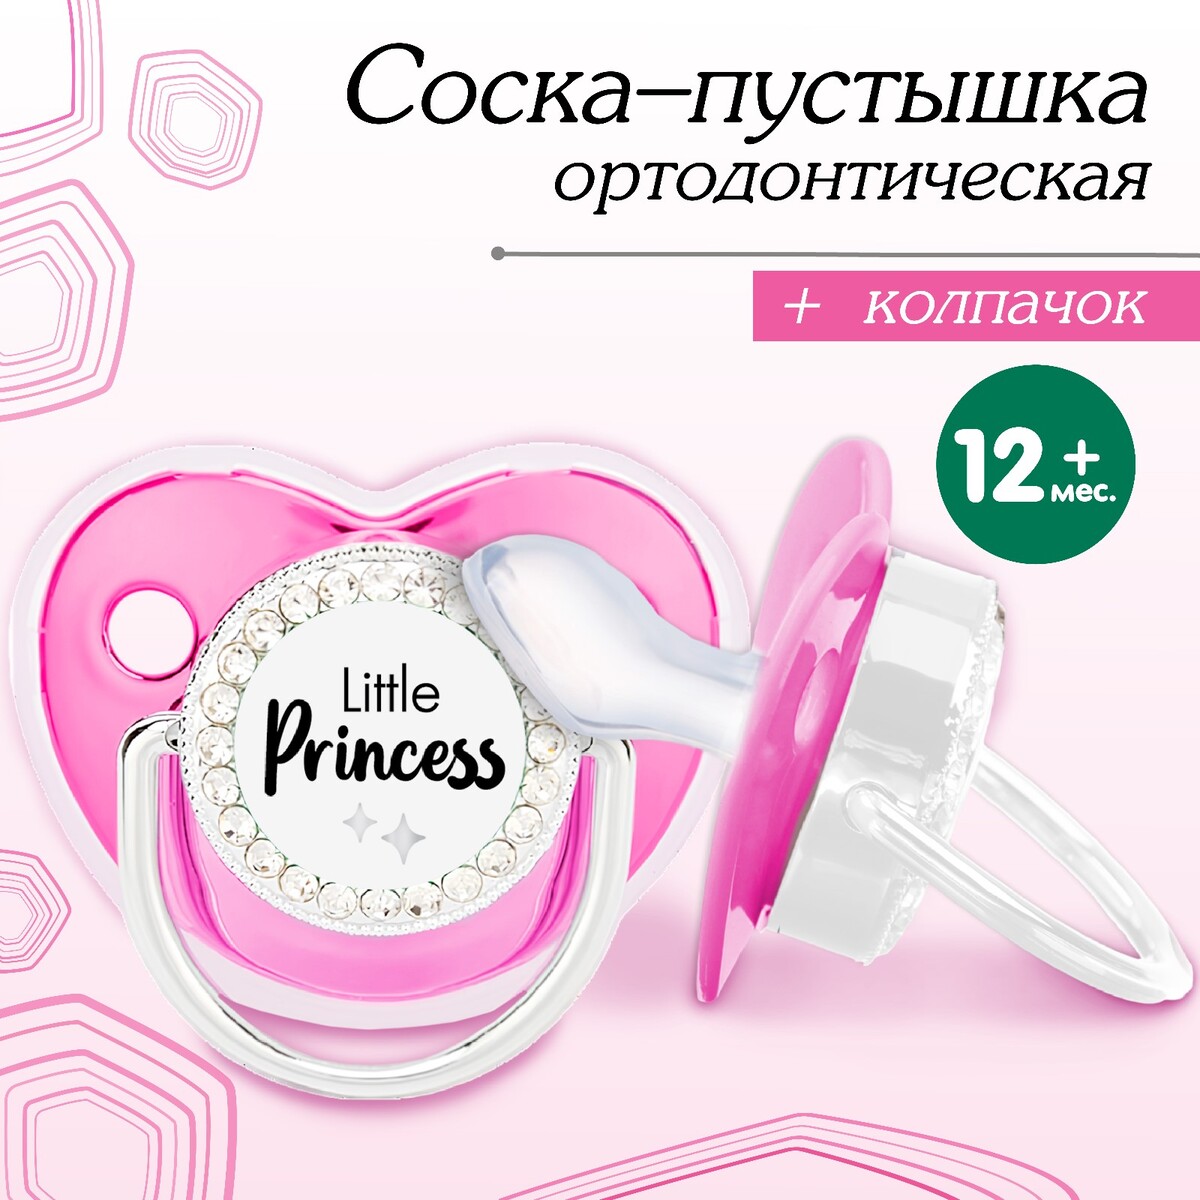 Соска - пустышка ортодонтическая, little princess, с колпачком, +12 мес., розовая/серебро, стразы